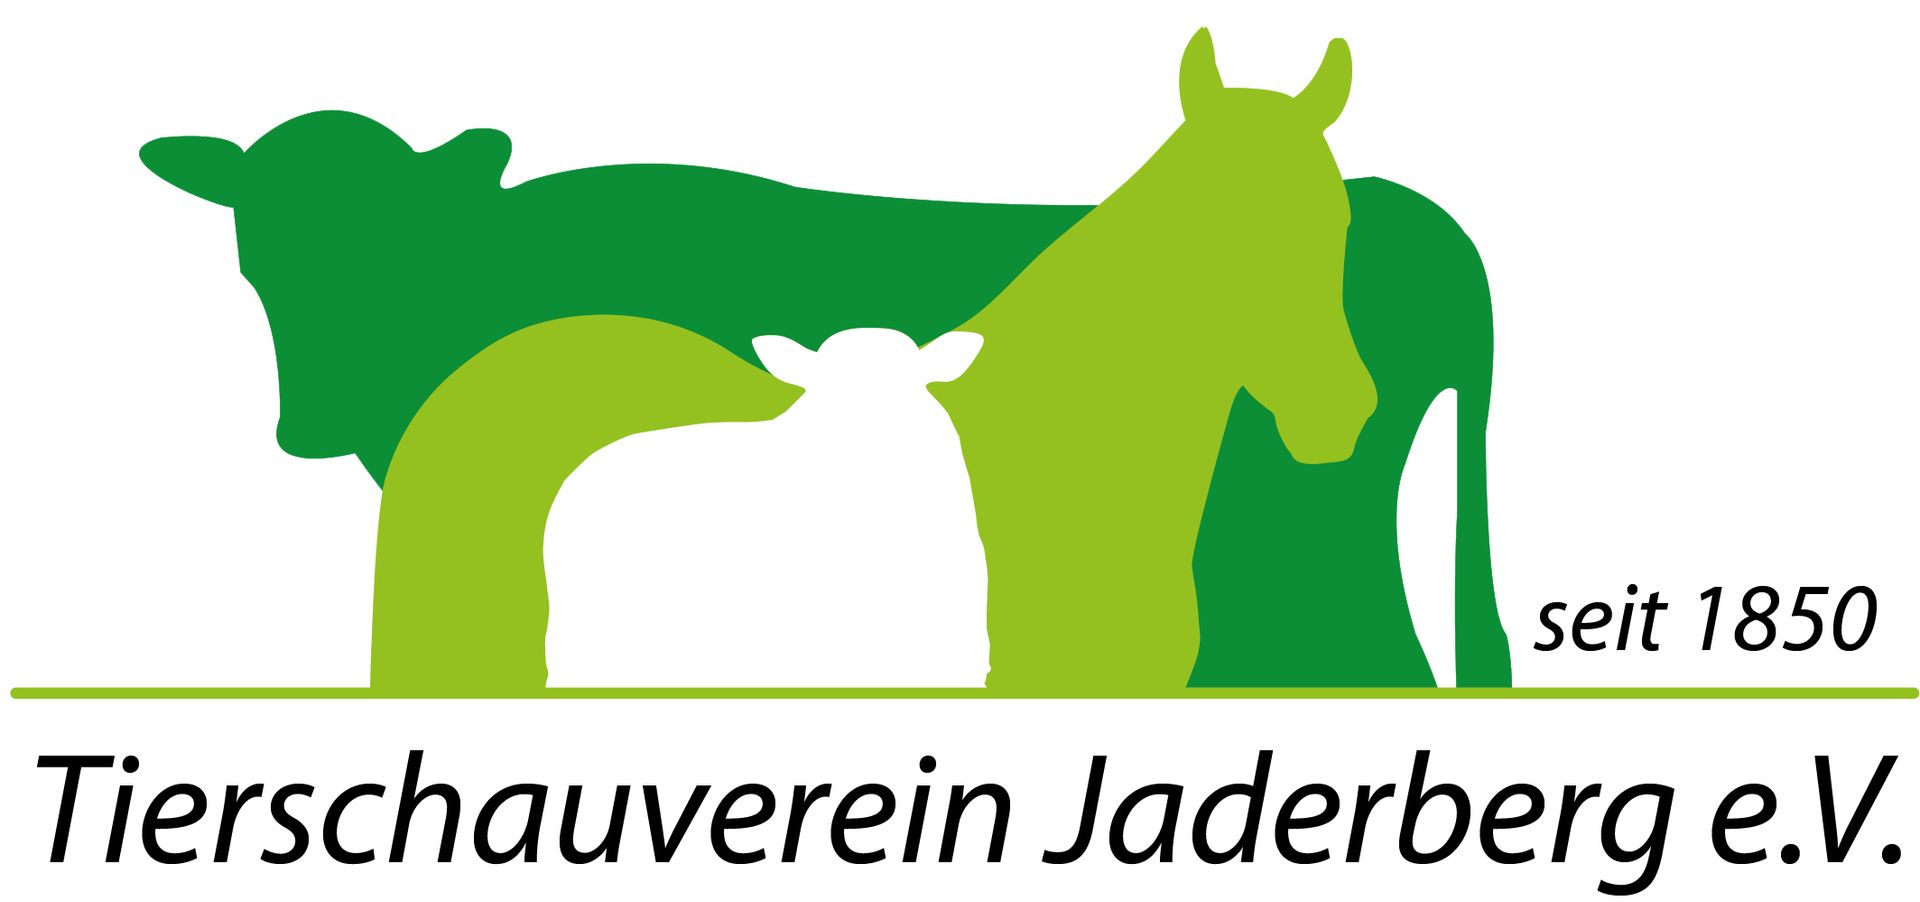 Tierschauverein Jaderberg e.V. Logo